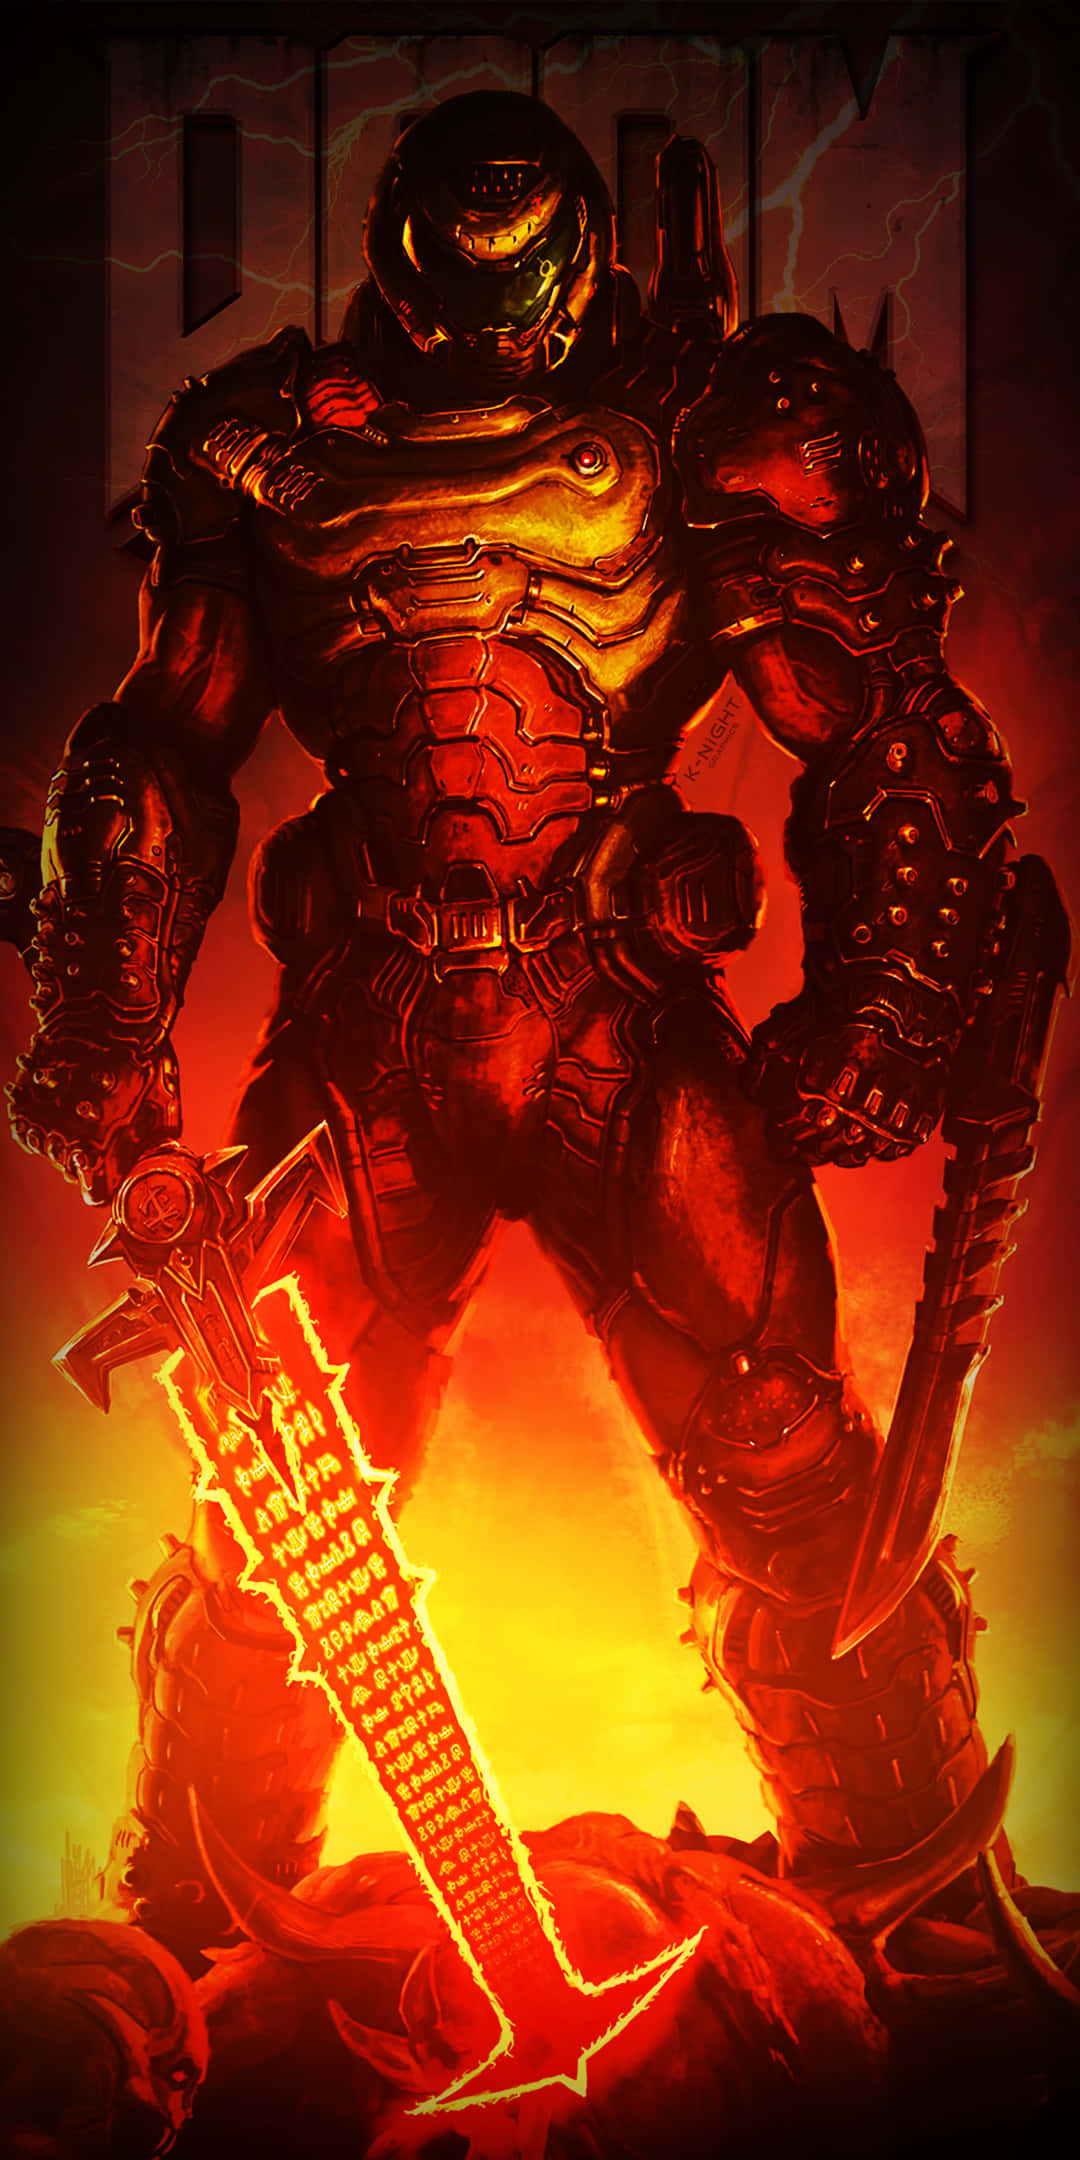 Flammendesportrait Pixel 3xl Doom Hintergrund